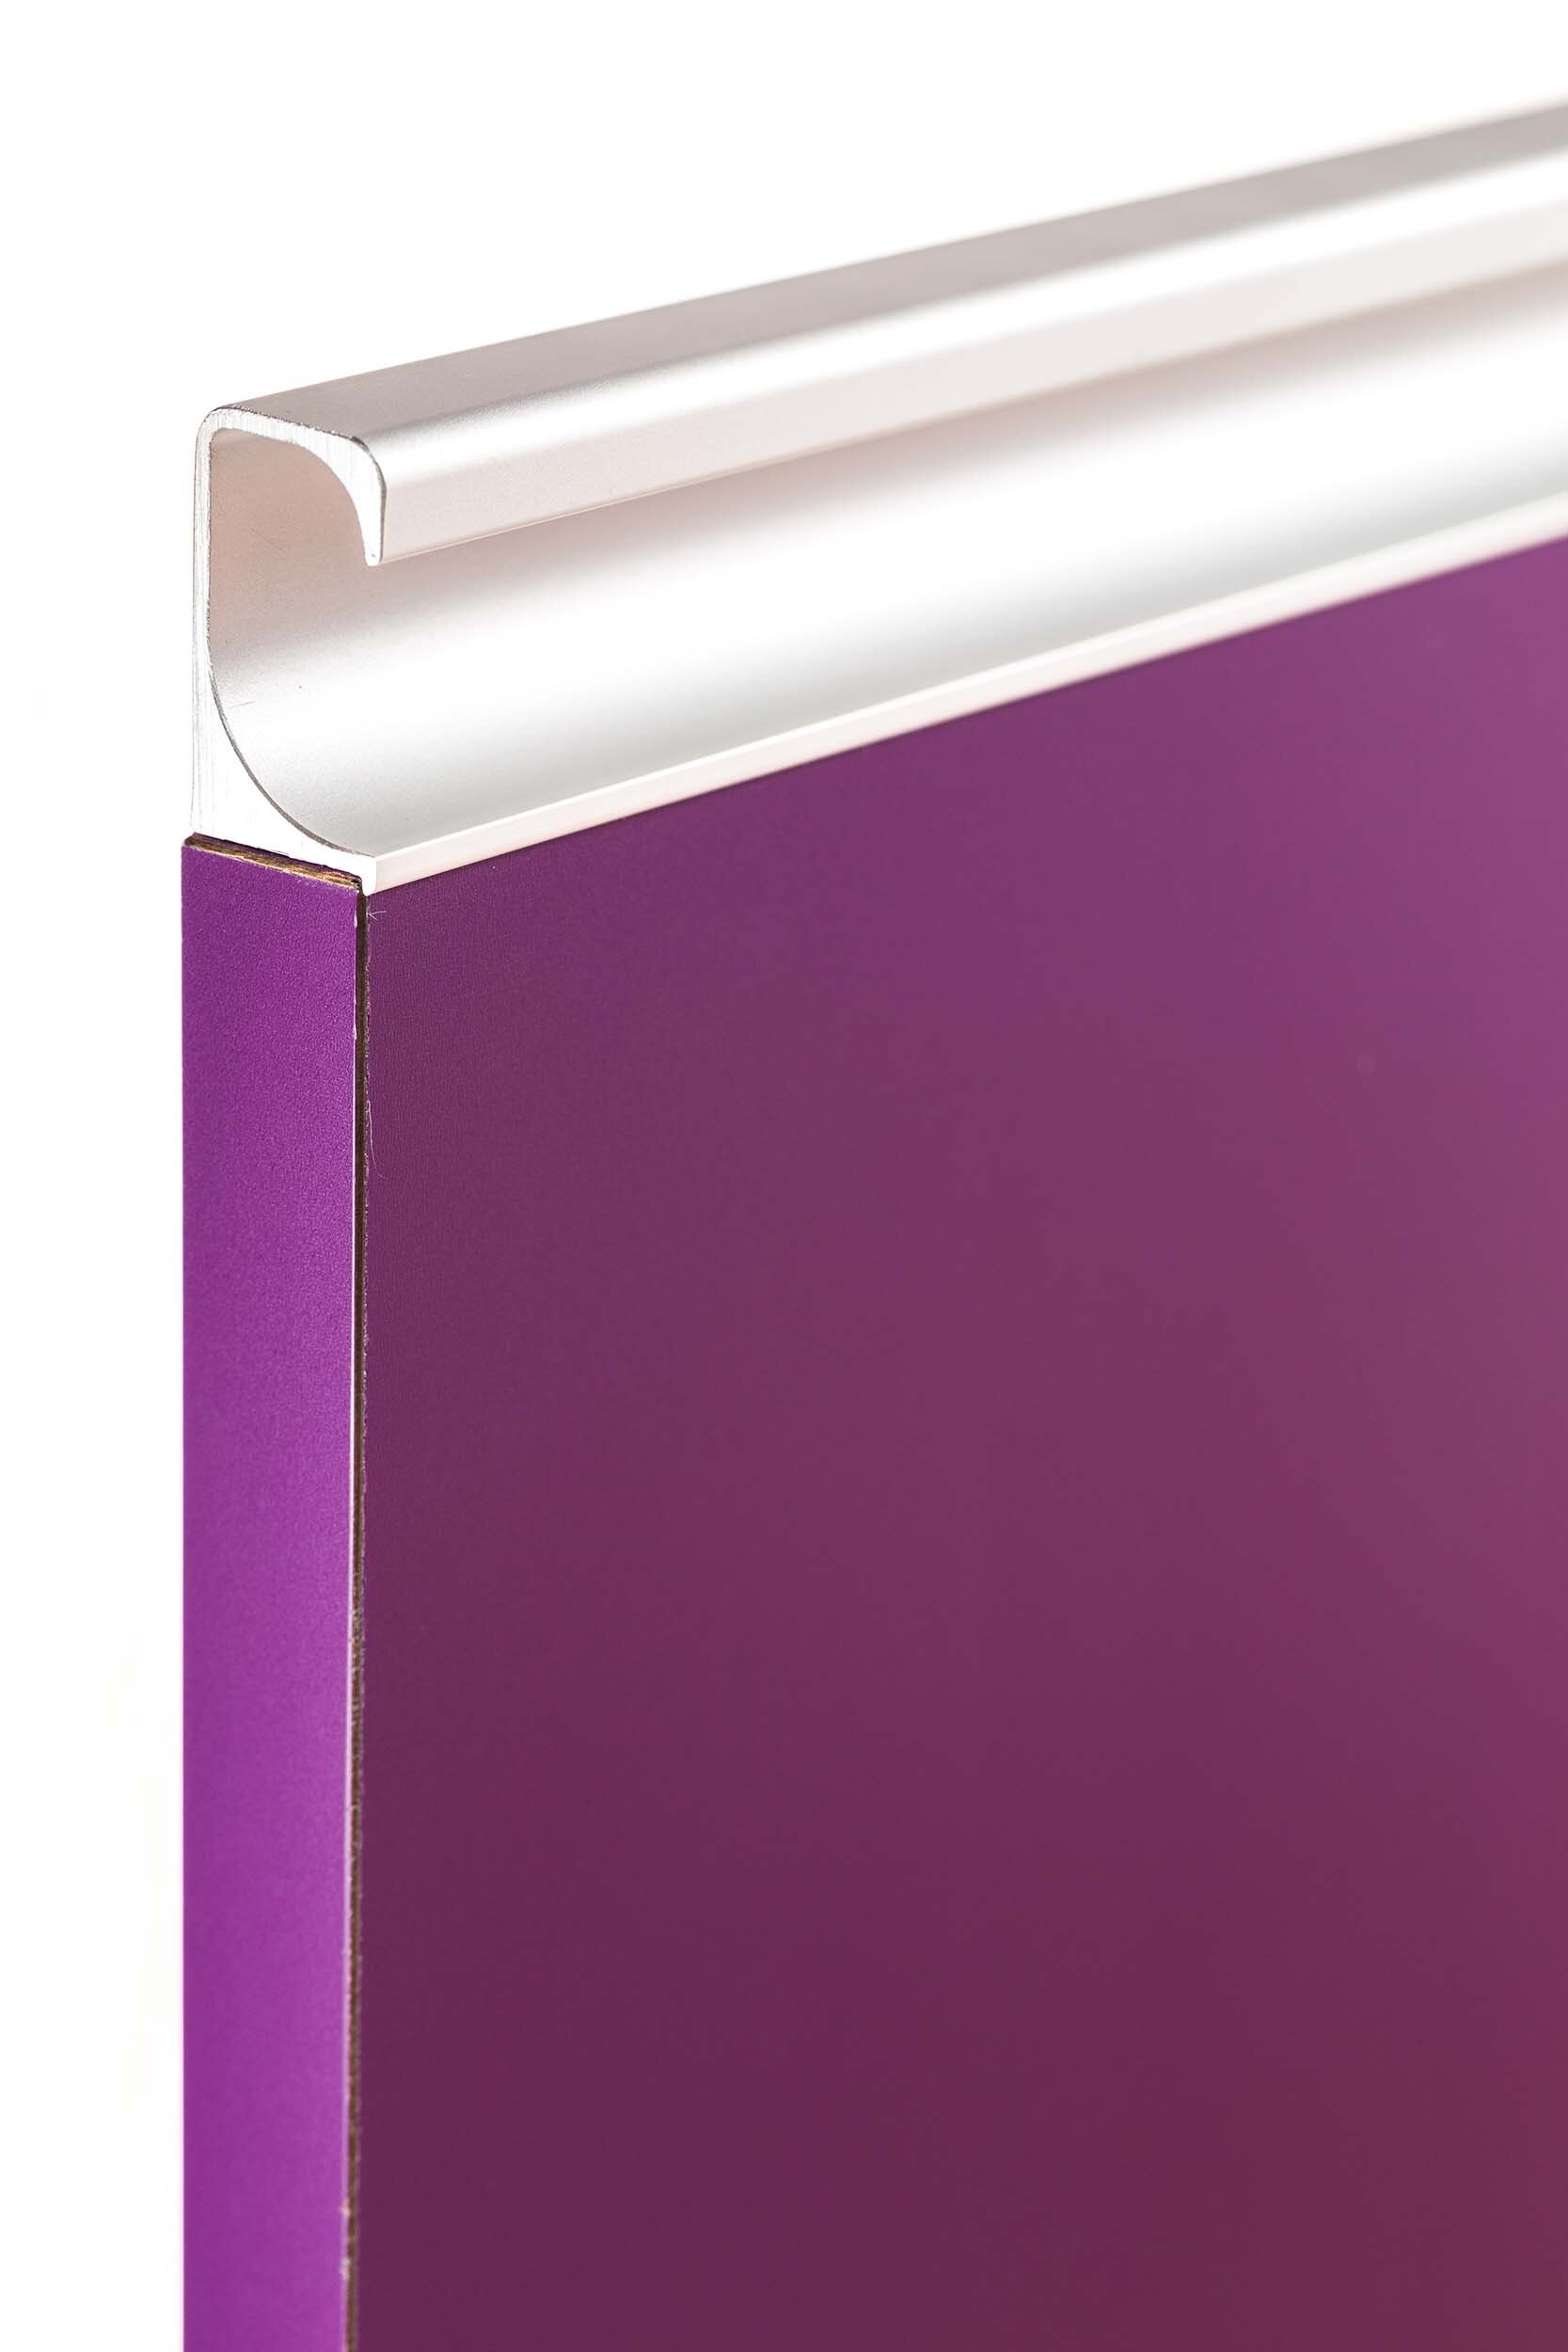 designer-laminate-cabinet-door-cassis-sequel-aluminum-pull-side.jpg